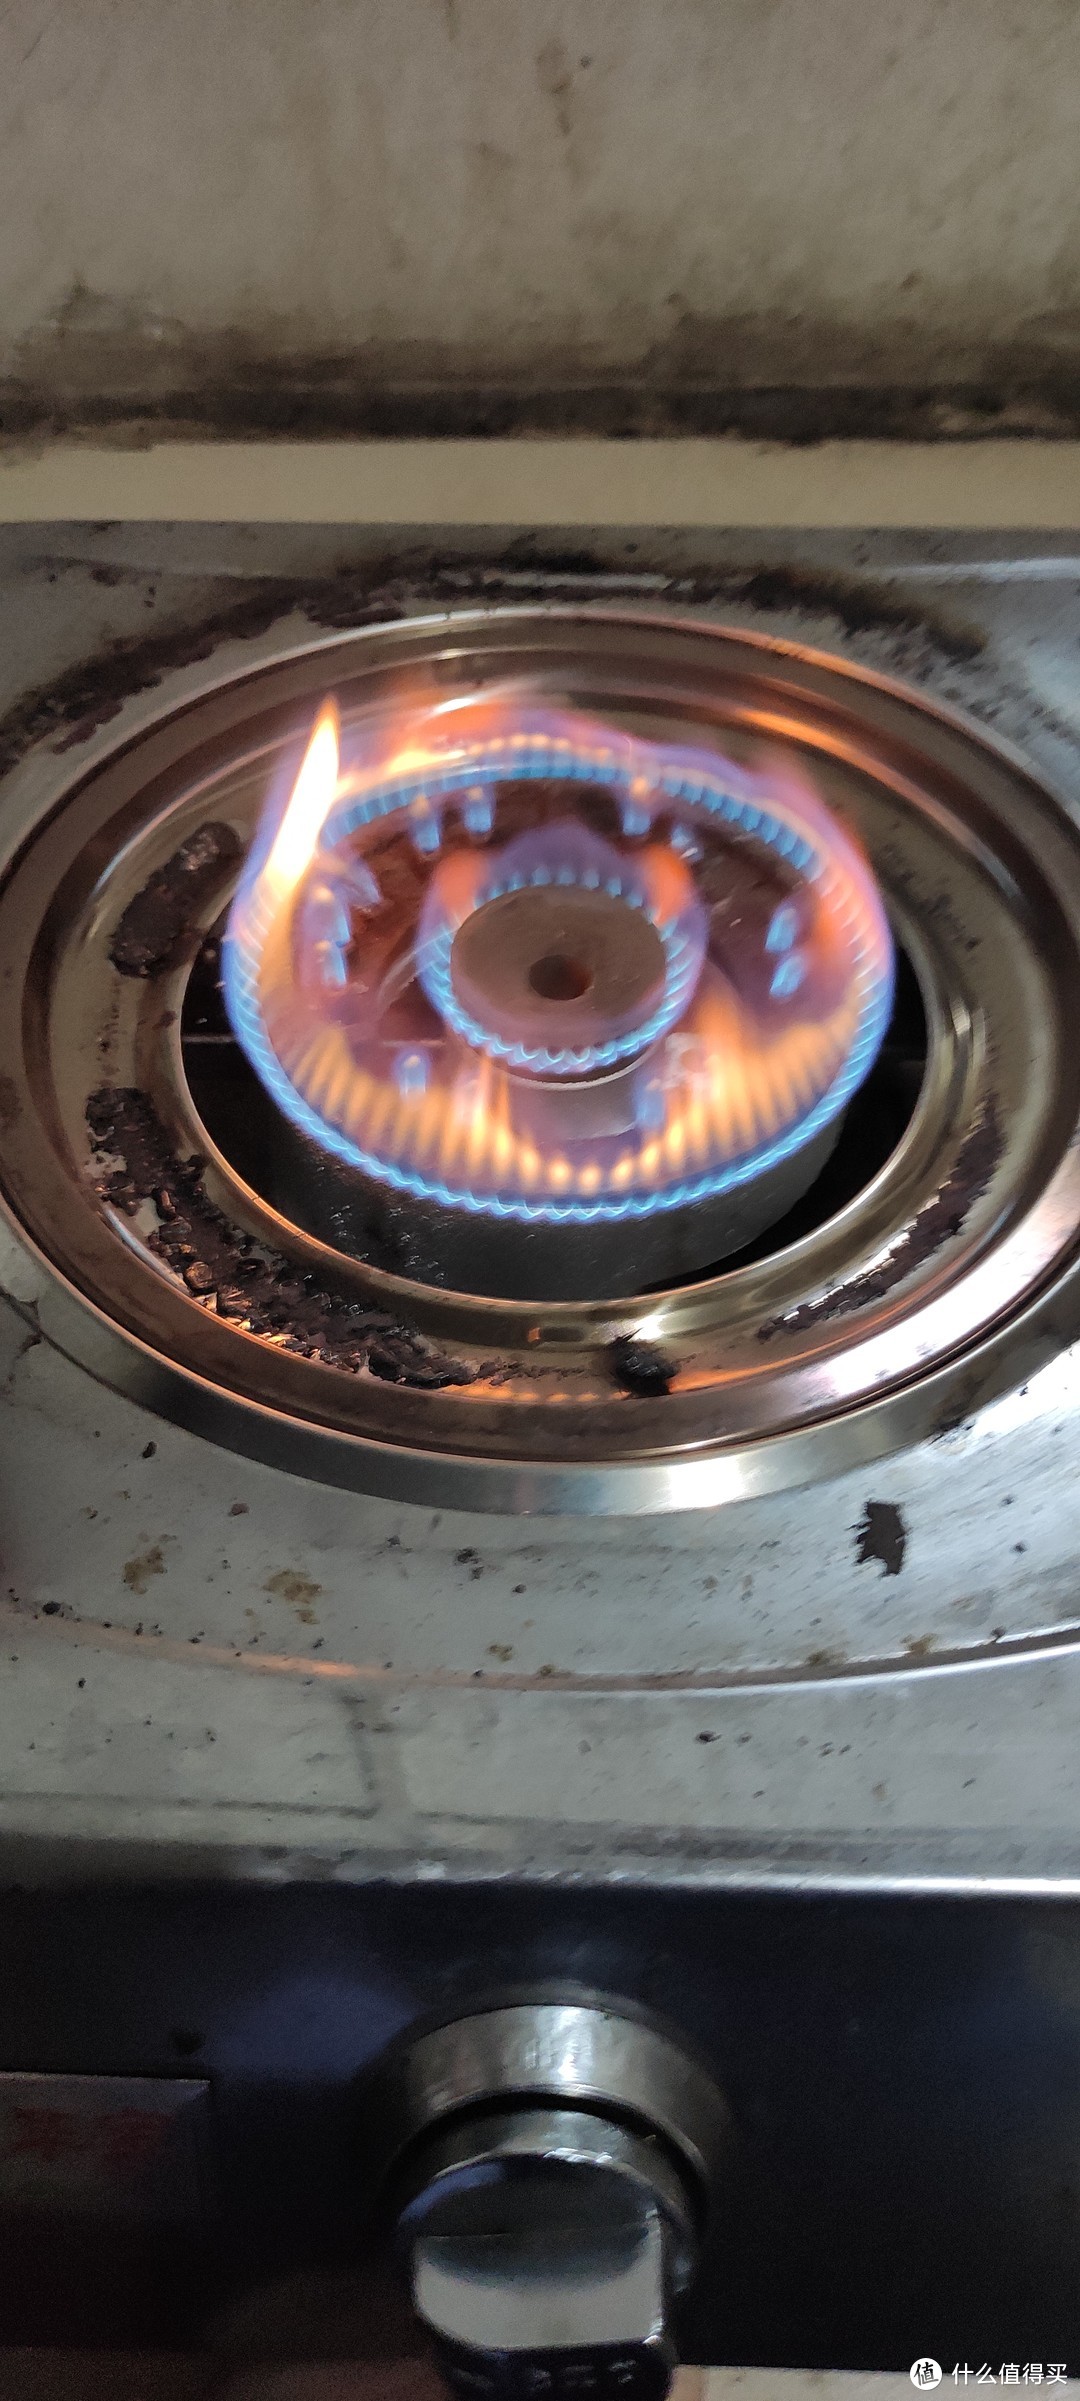 煤气灶火苗一直红火如何调整成蓝火